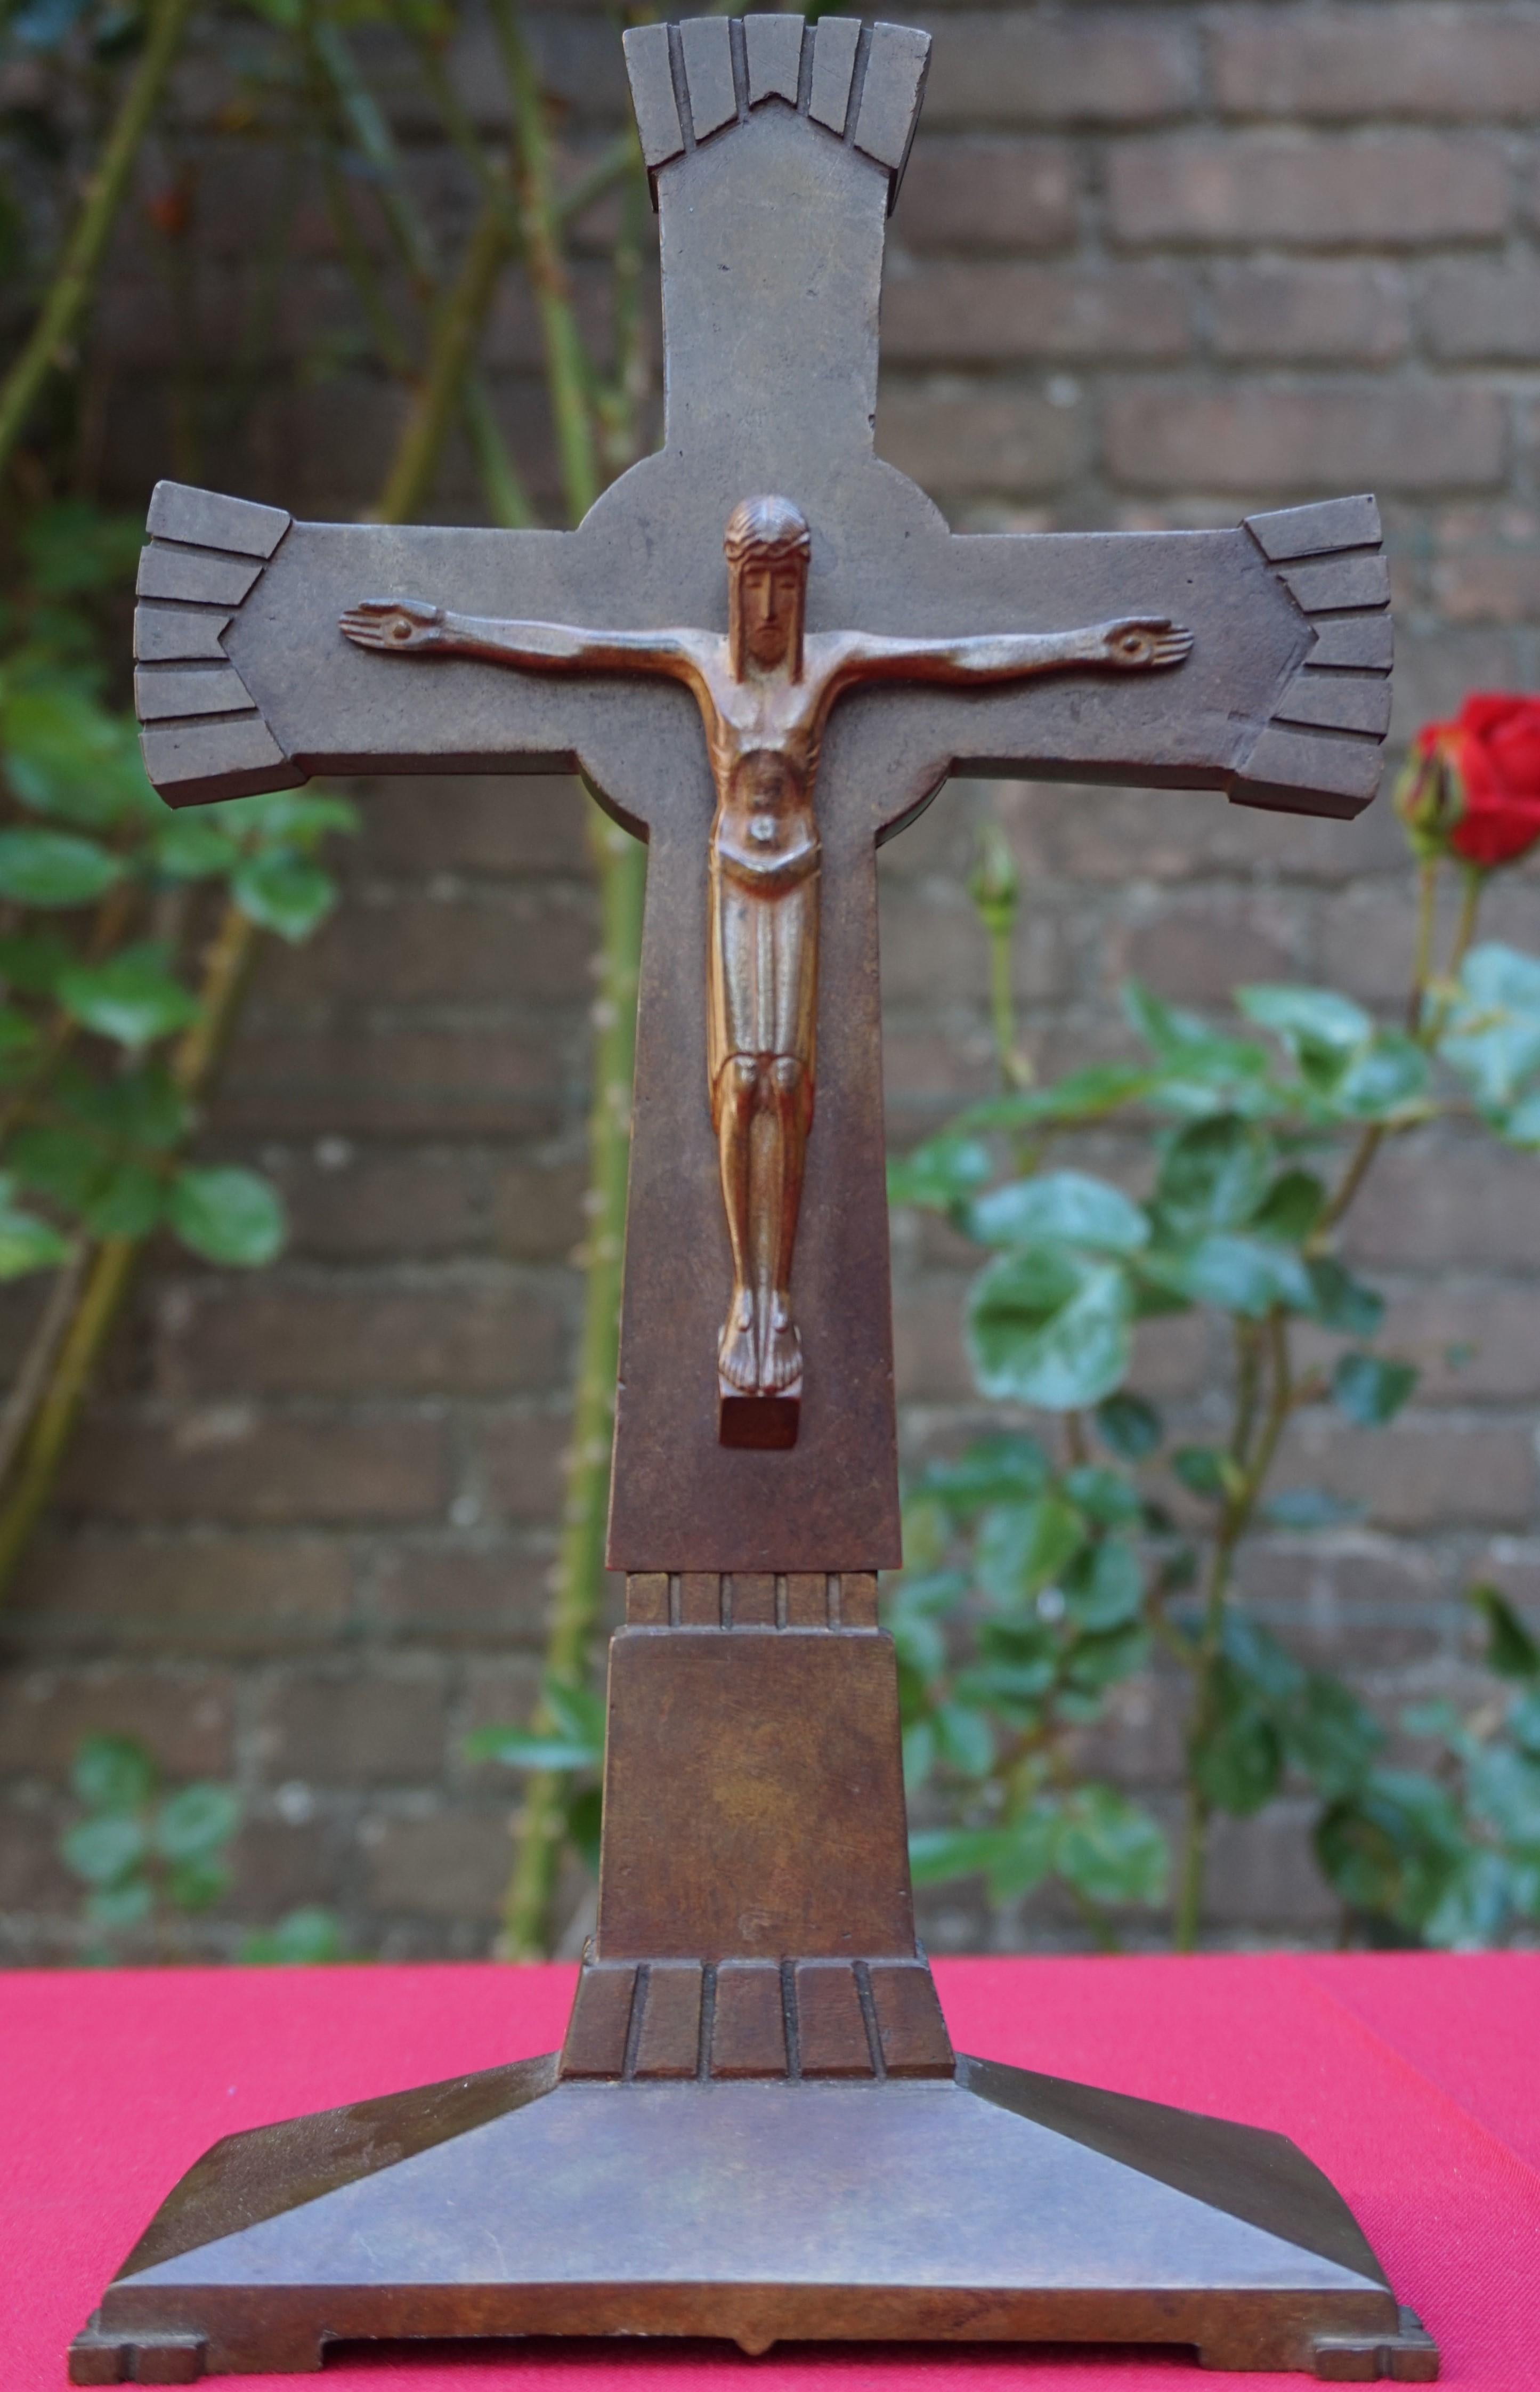 Einzigartiges und gekennzeichnetes Art Deco Kruzifix.

Wenn Sie auf der Suche nach einer einzigartigen und bedeutungsvollen Antiquität sind, um Ihrem Glauben an das Leben und die Lehren Jesu Christi Ausdruck zu verleihen, dann könnte dieses